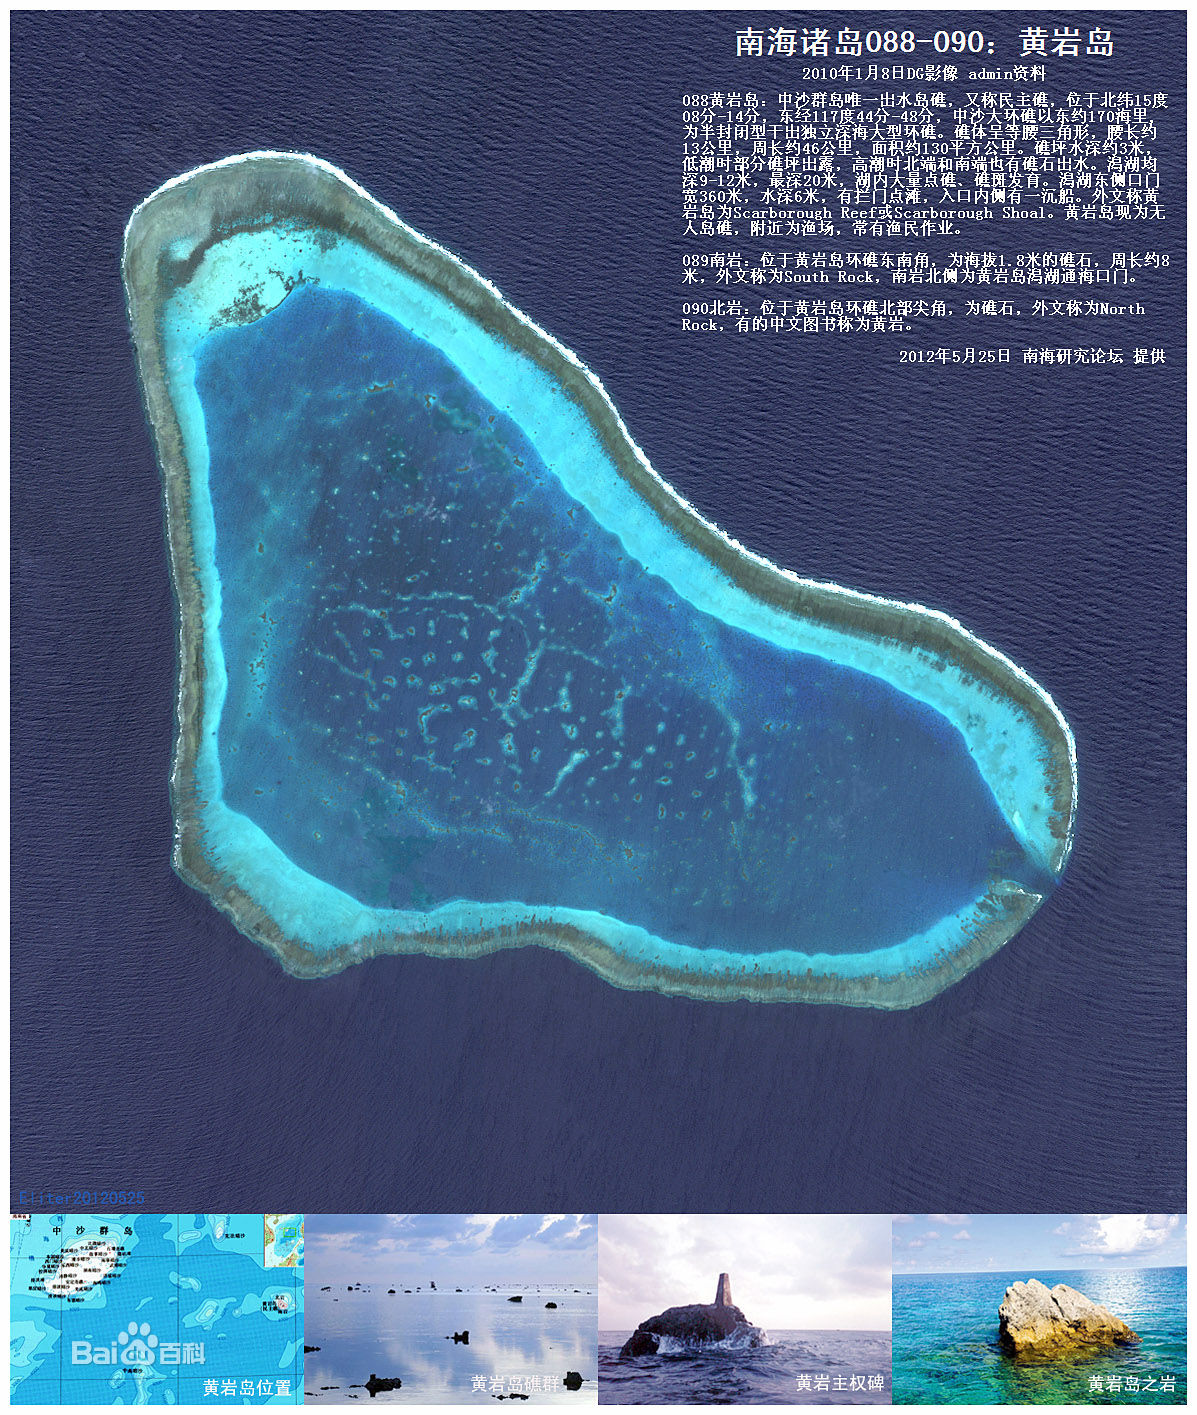 黄岩岛事件 - 文档视界